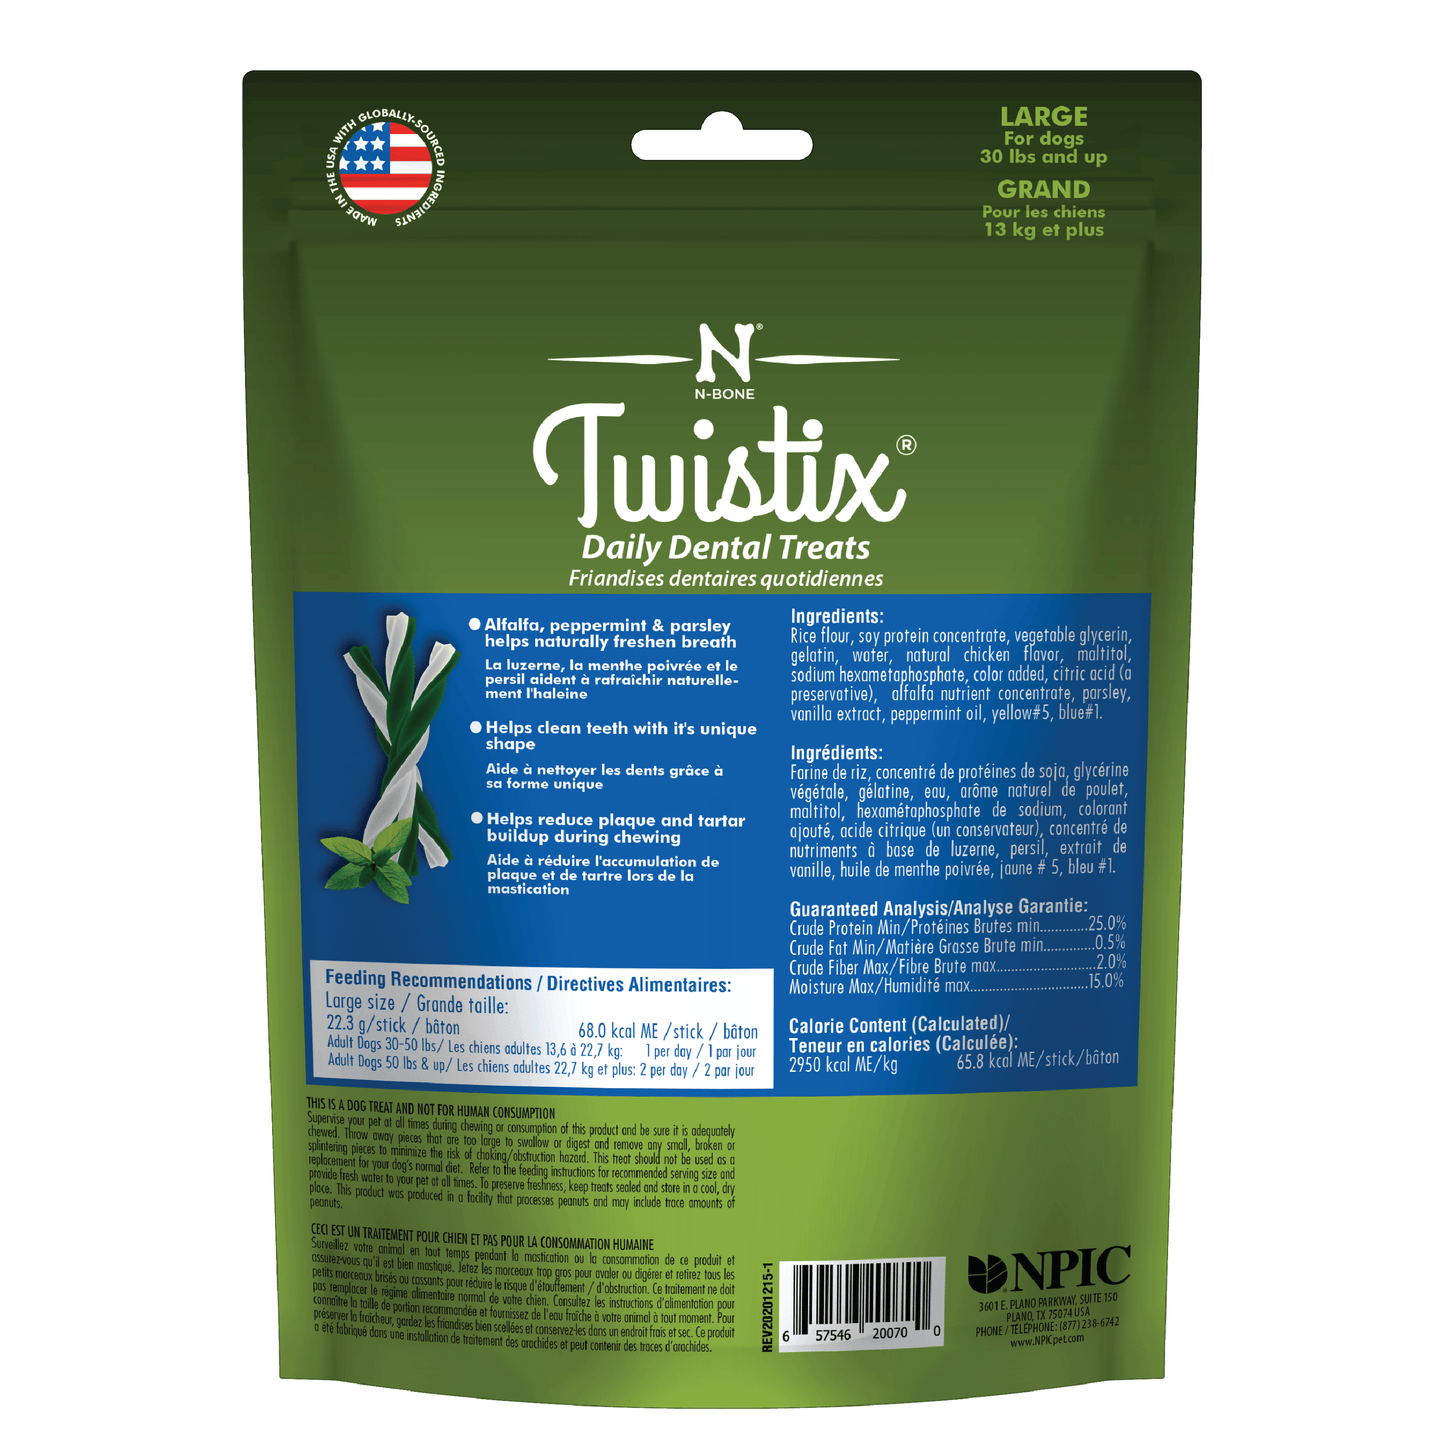 N-Bone® Twistix® Dental Treats Vanilla Mint Flavor